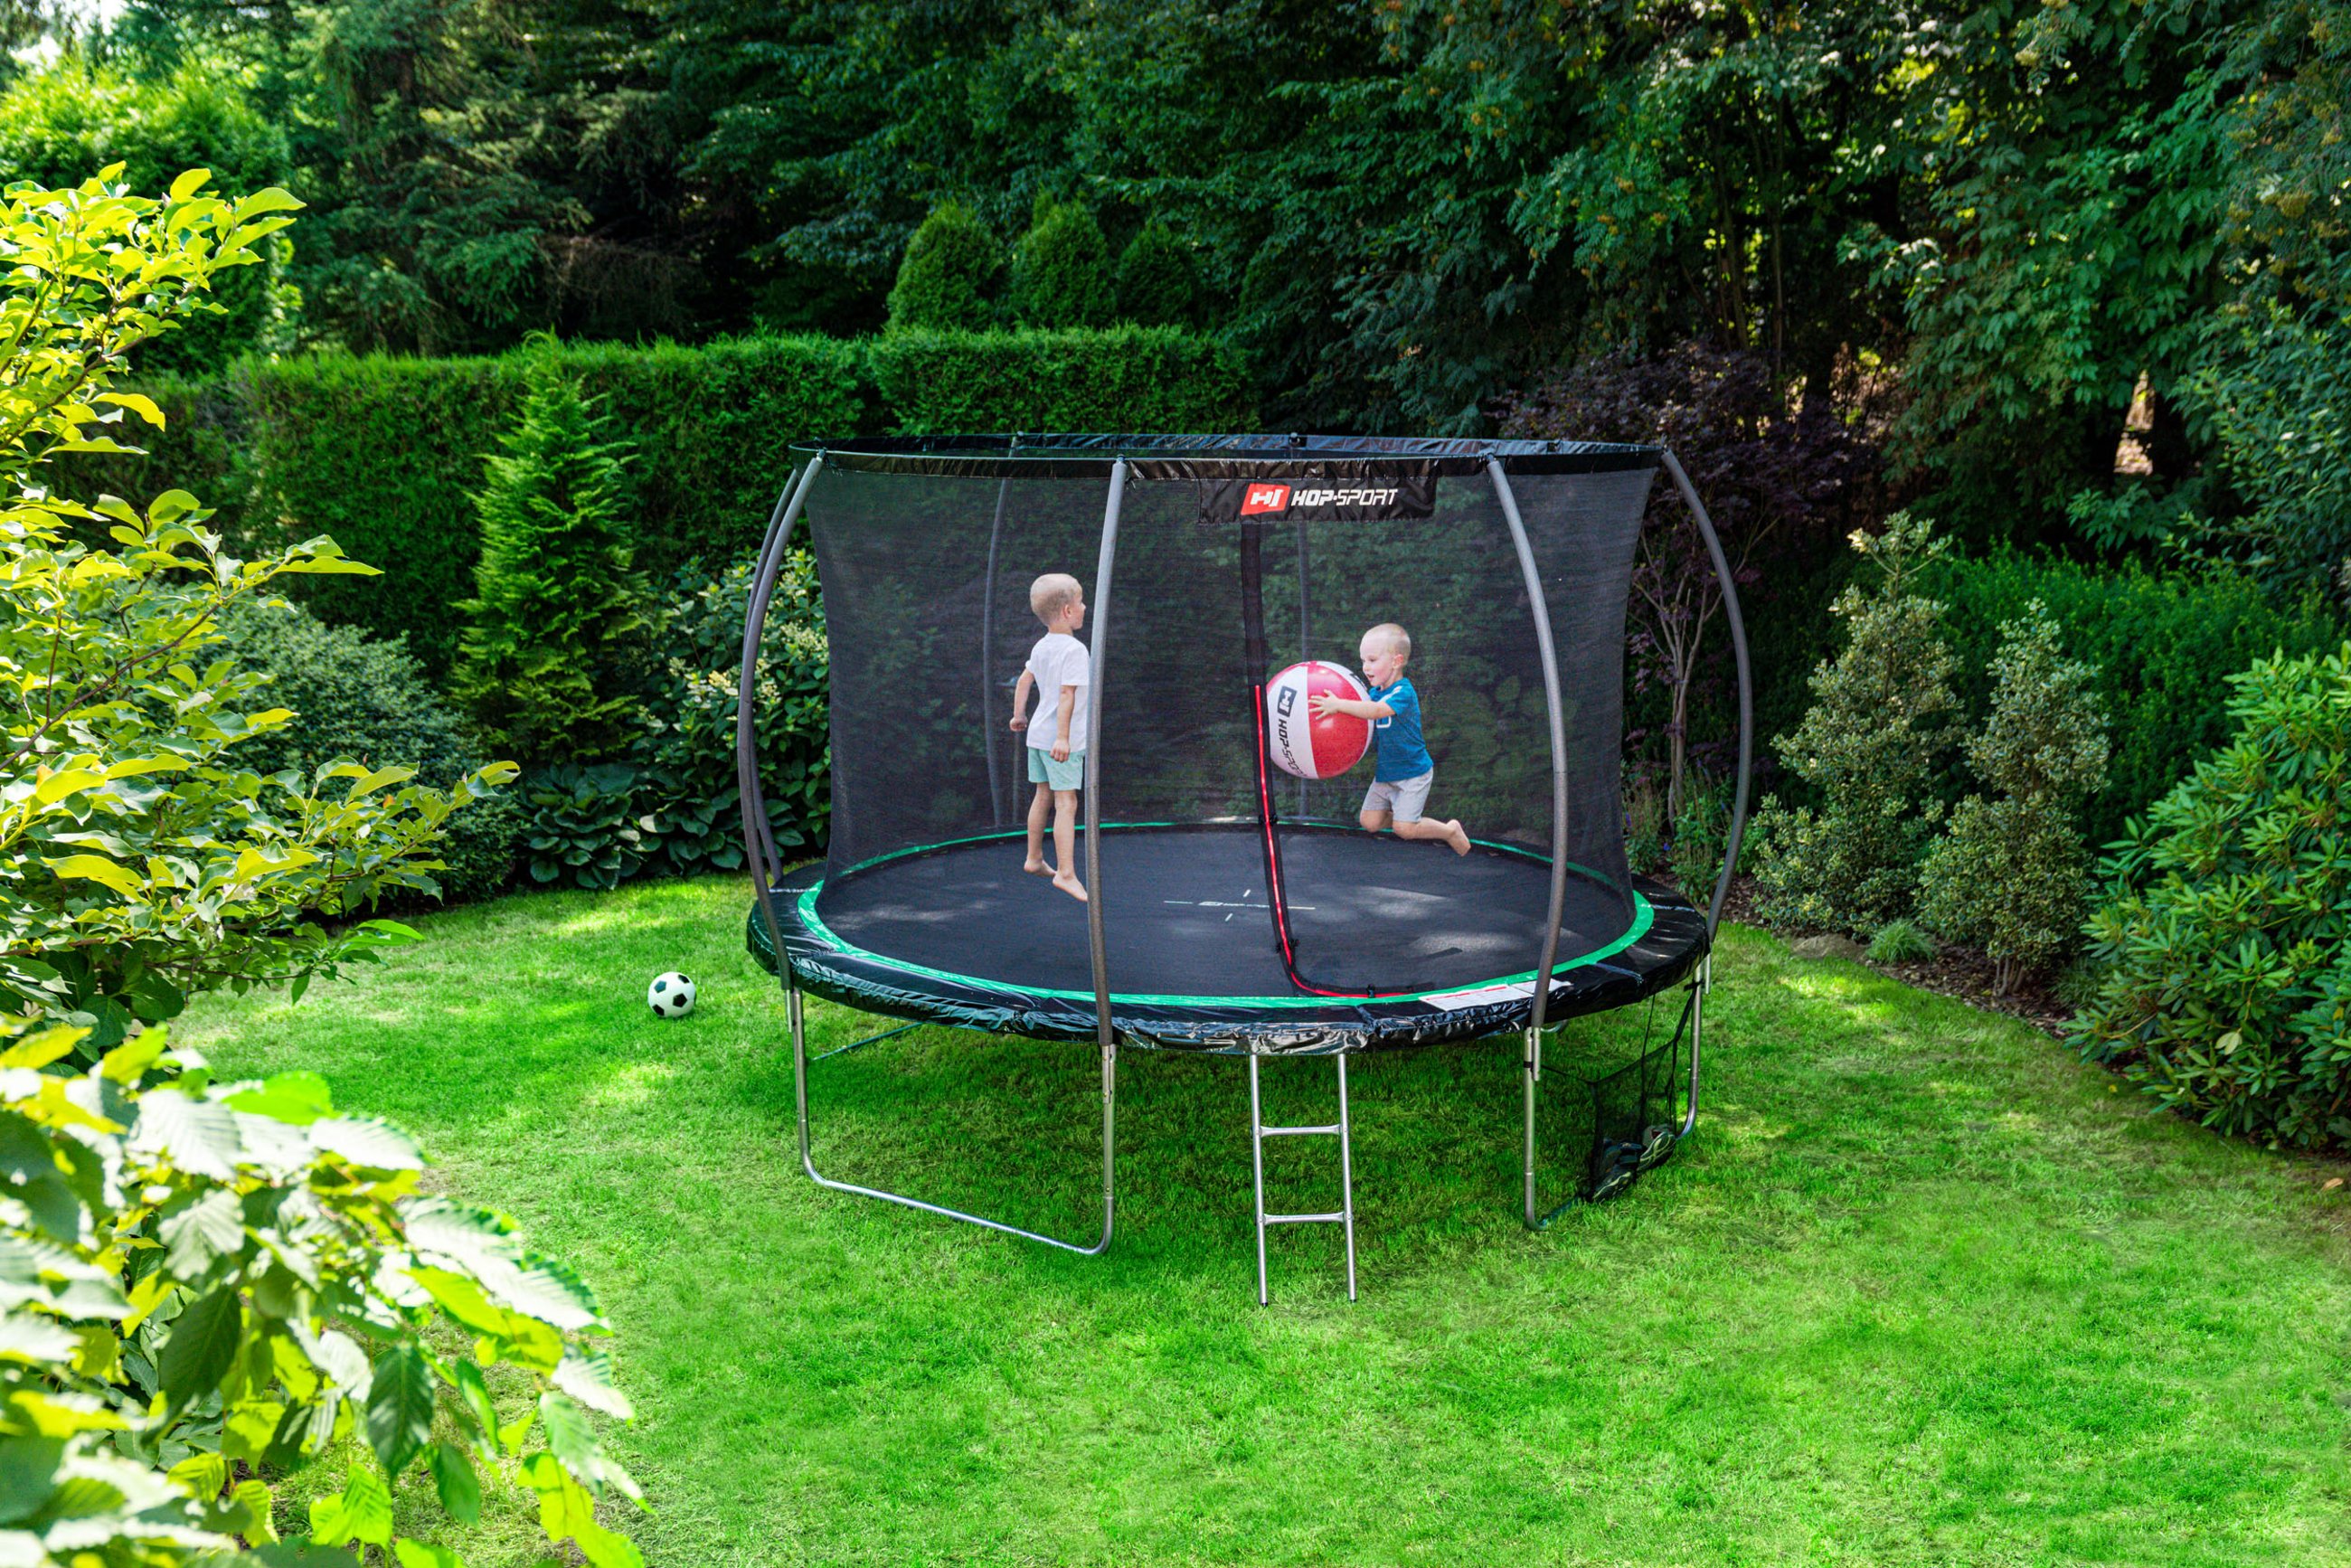 dzieci skaczące na trampolinie ogrodowej dyni Hop-Sport 